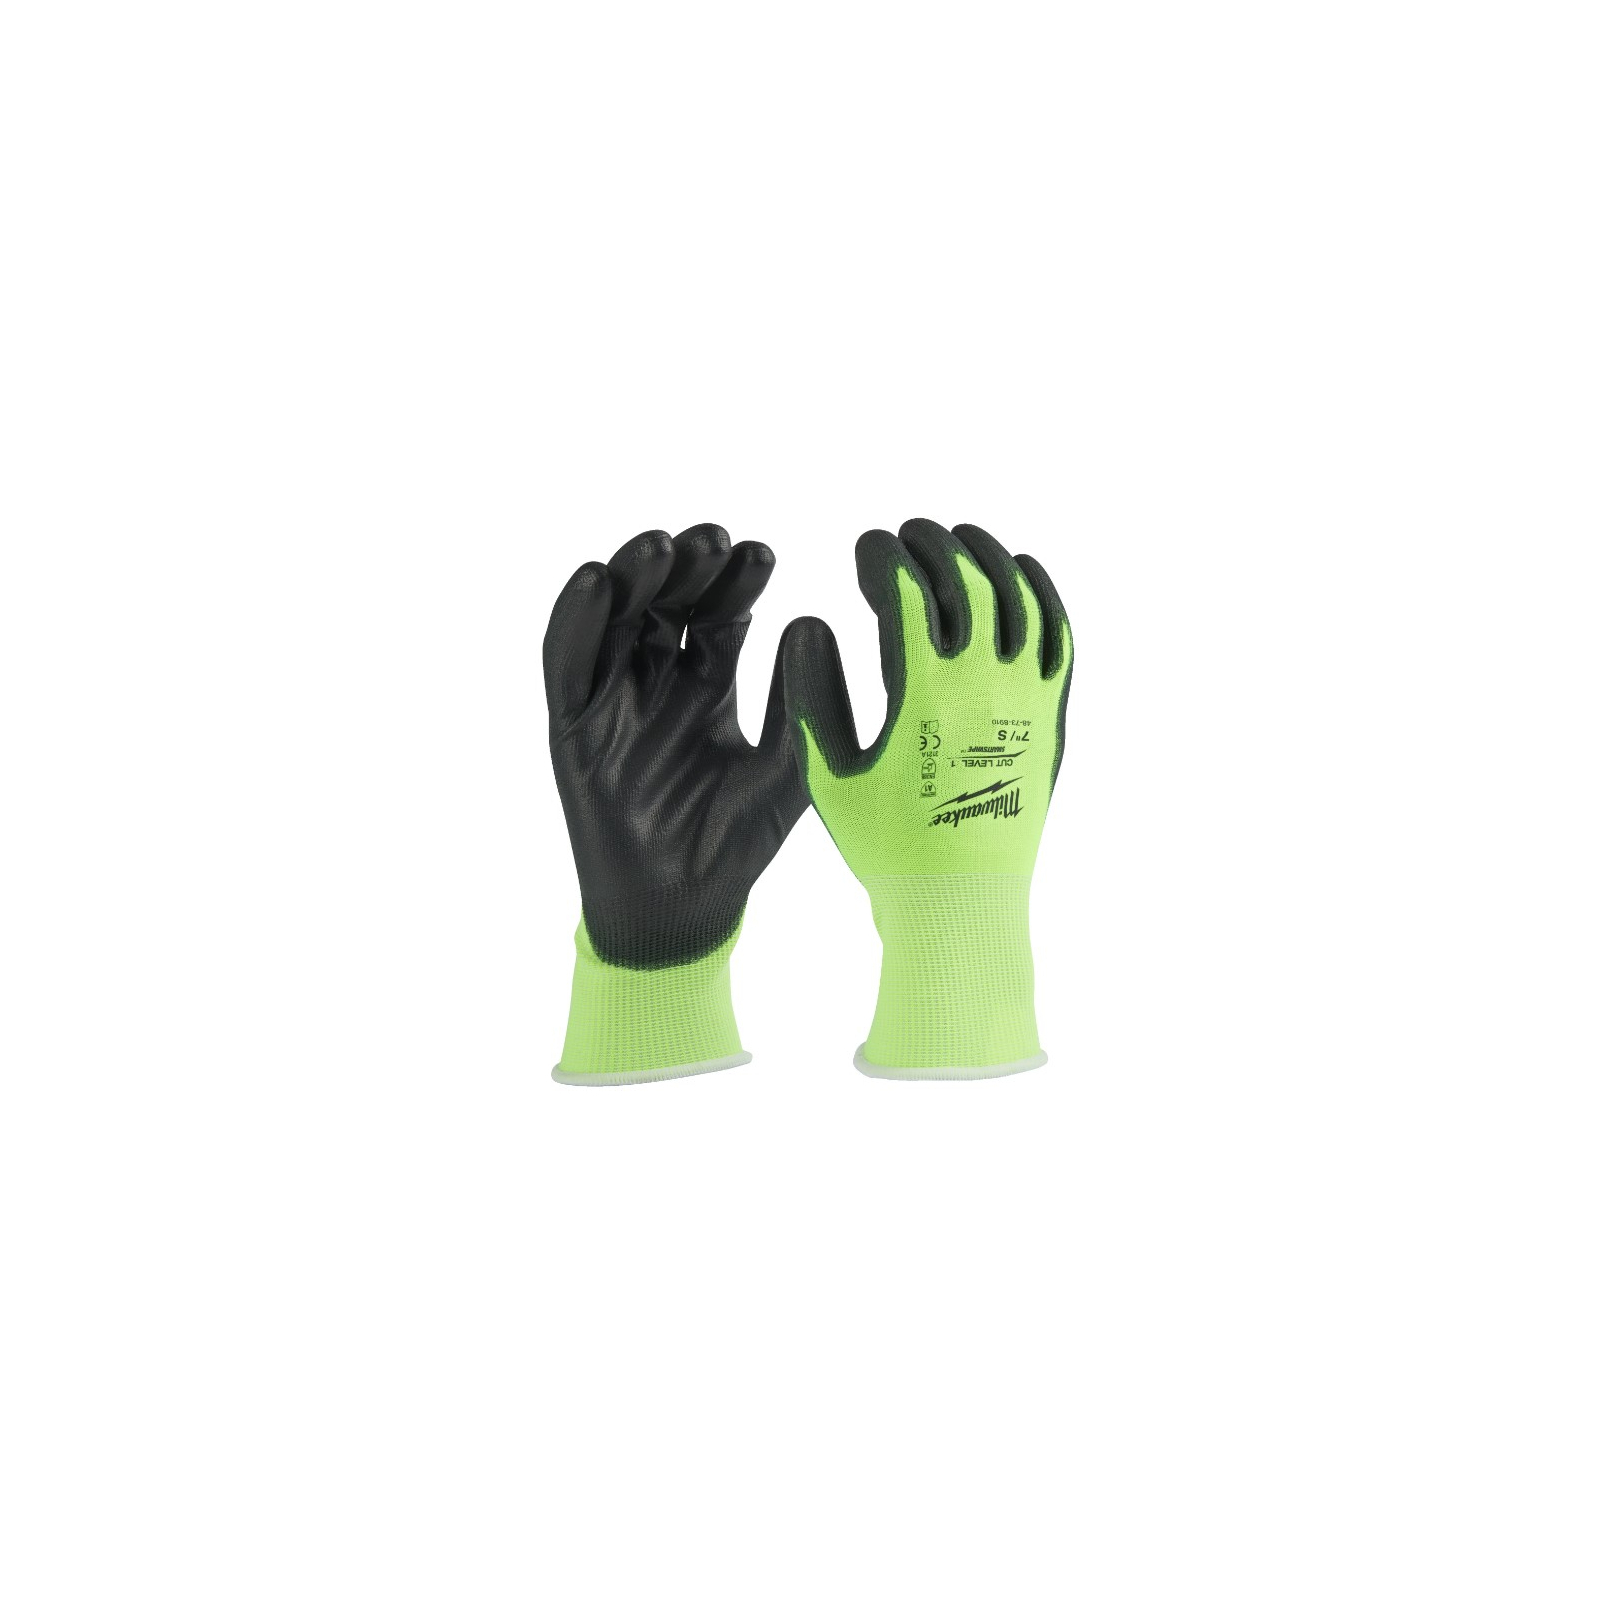 Защитные перчатки Milwaukee Hi-Vis Cut размер XXL/11, 12 пар (4932492917) изображение 2